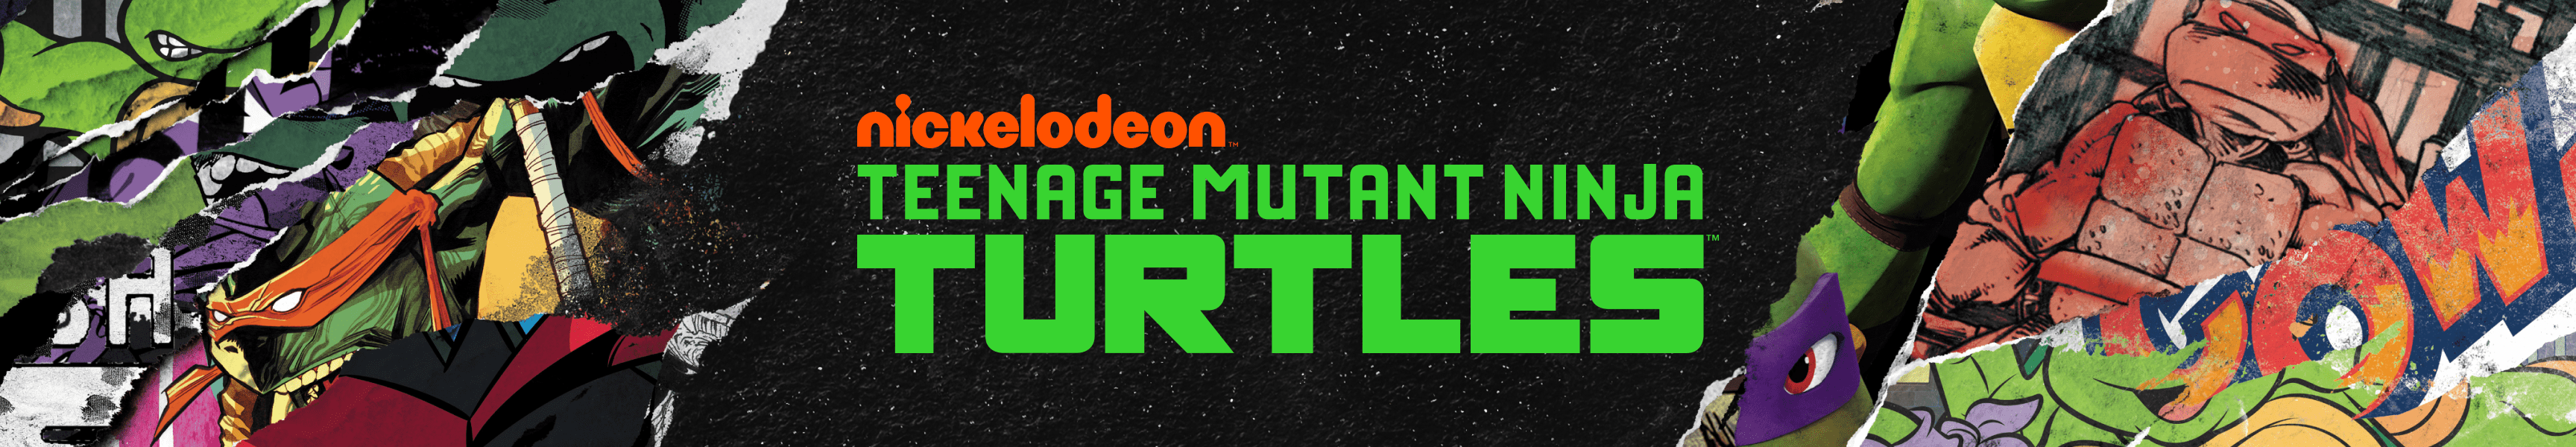 Teenage Mutant Ninja Turtles Affiches